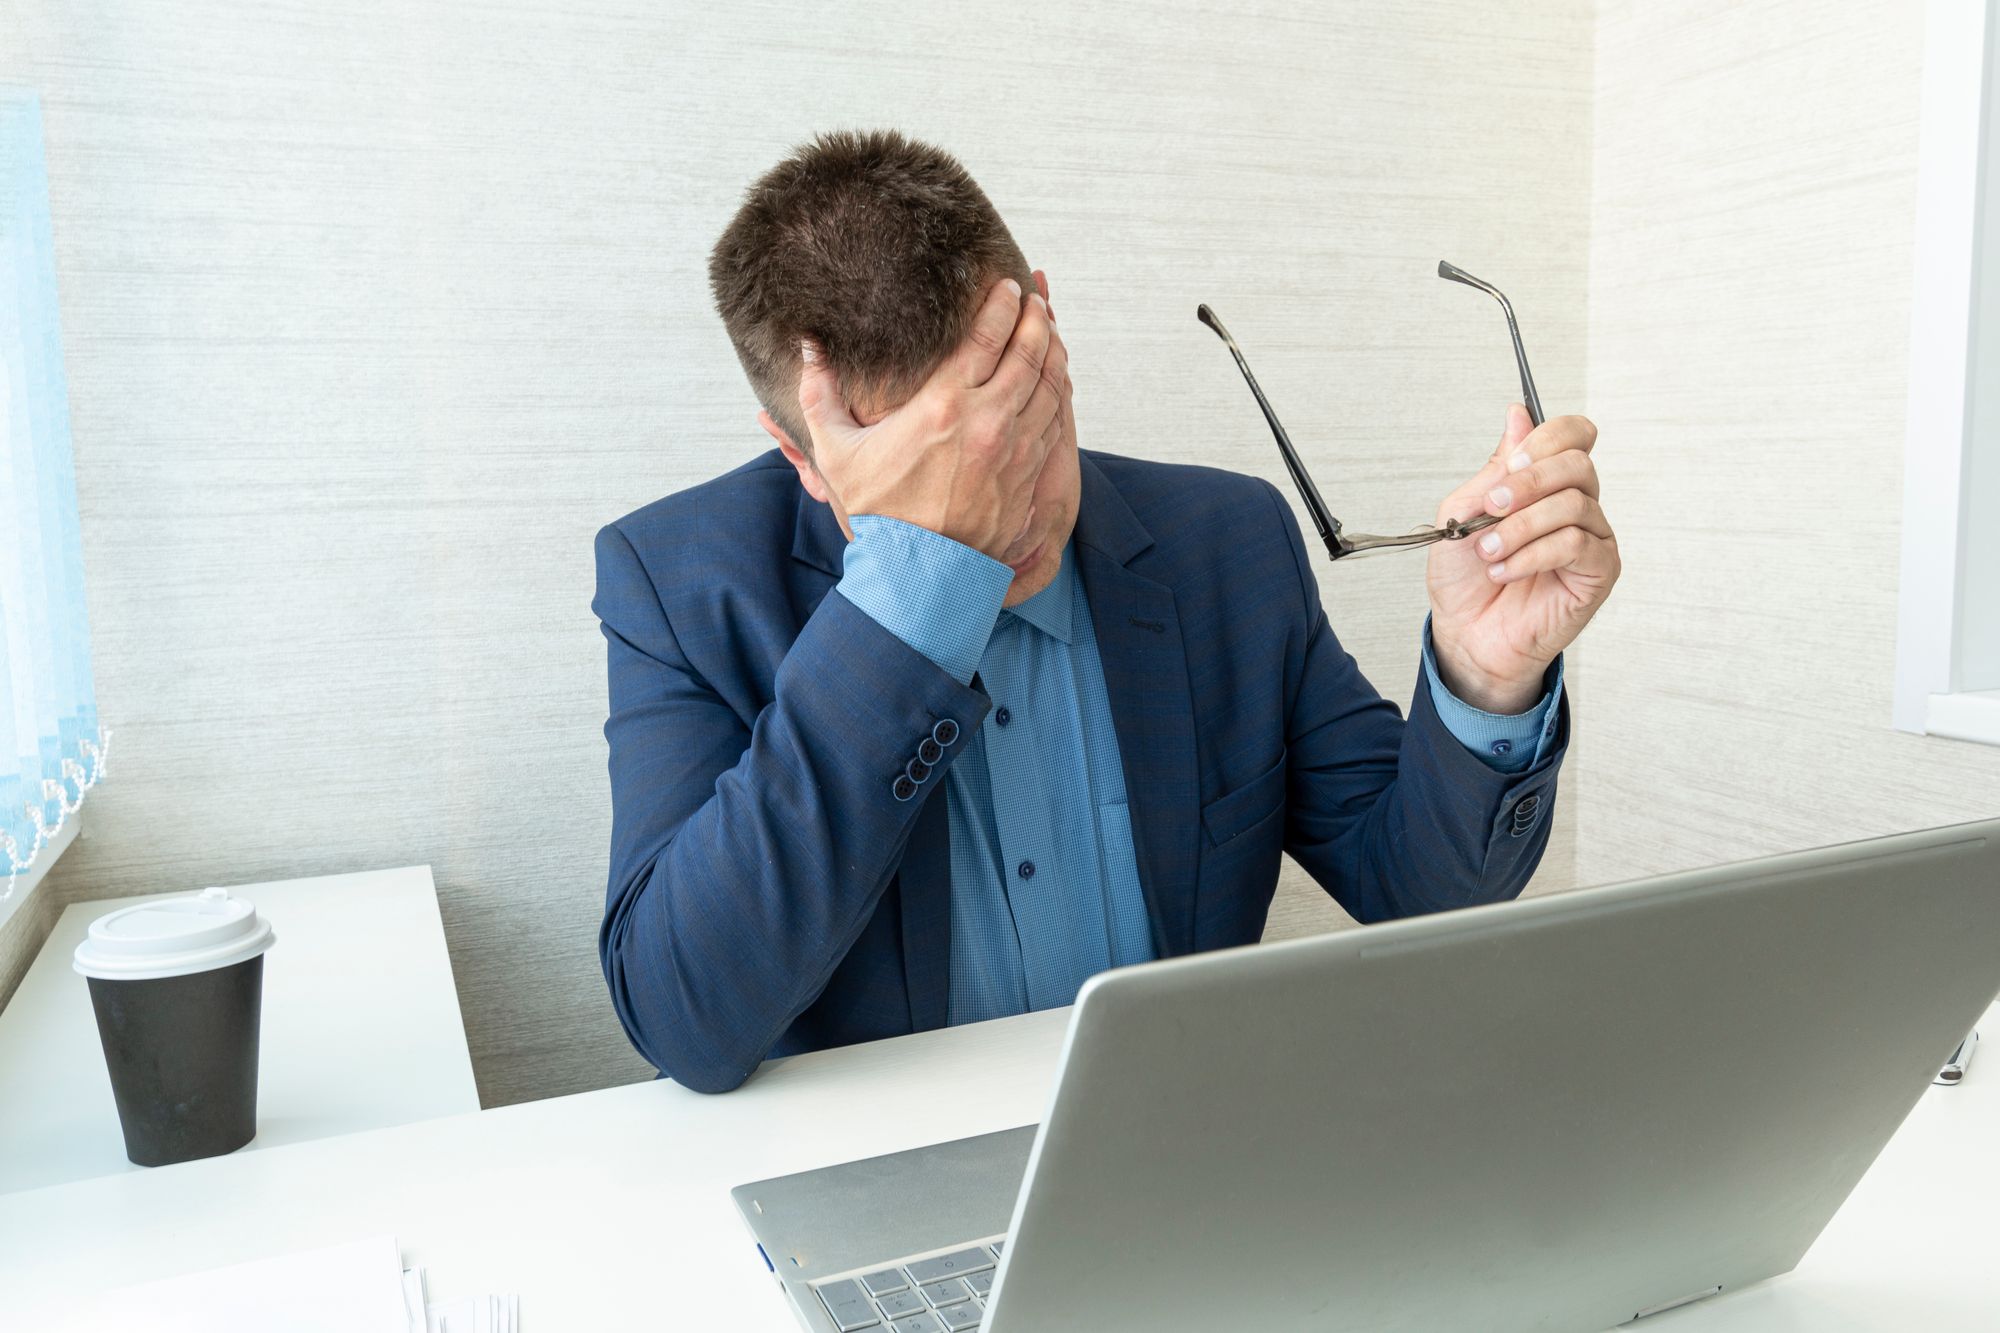 Un employé de bureau devant son ordinateur portable, qui semble inquiet, qui a retiré ses lunettes et qui pose la main sur son visage.